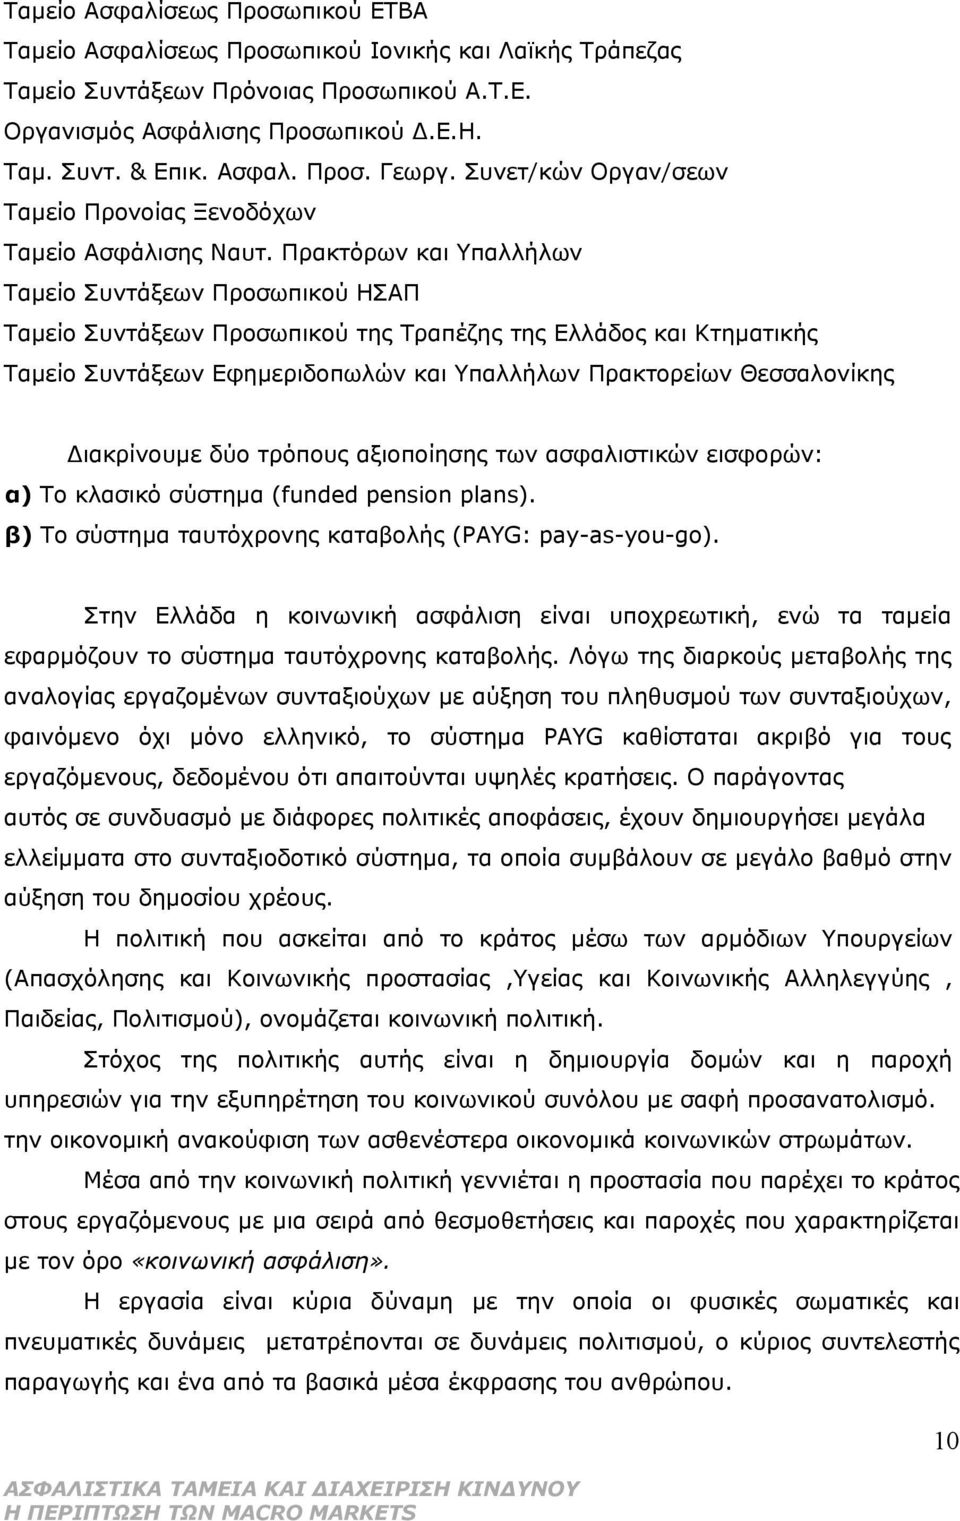 Πρακτόρων και Υπαλλήλων Ταμείο Συντάξεων Προσωπικού ΗΣΑΠ Ταμείο Συντάξεων Προσωπικού της Τραπέζης της Ελλάδος και Κτηματικής Ταμείο Συντάξεων Εφημεριδοπωλών και Υπαλλήλων Πρακτορείων Θεσσαλονίκης